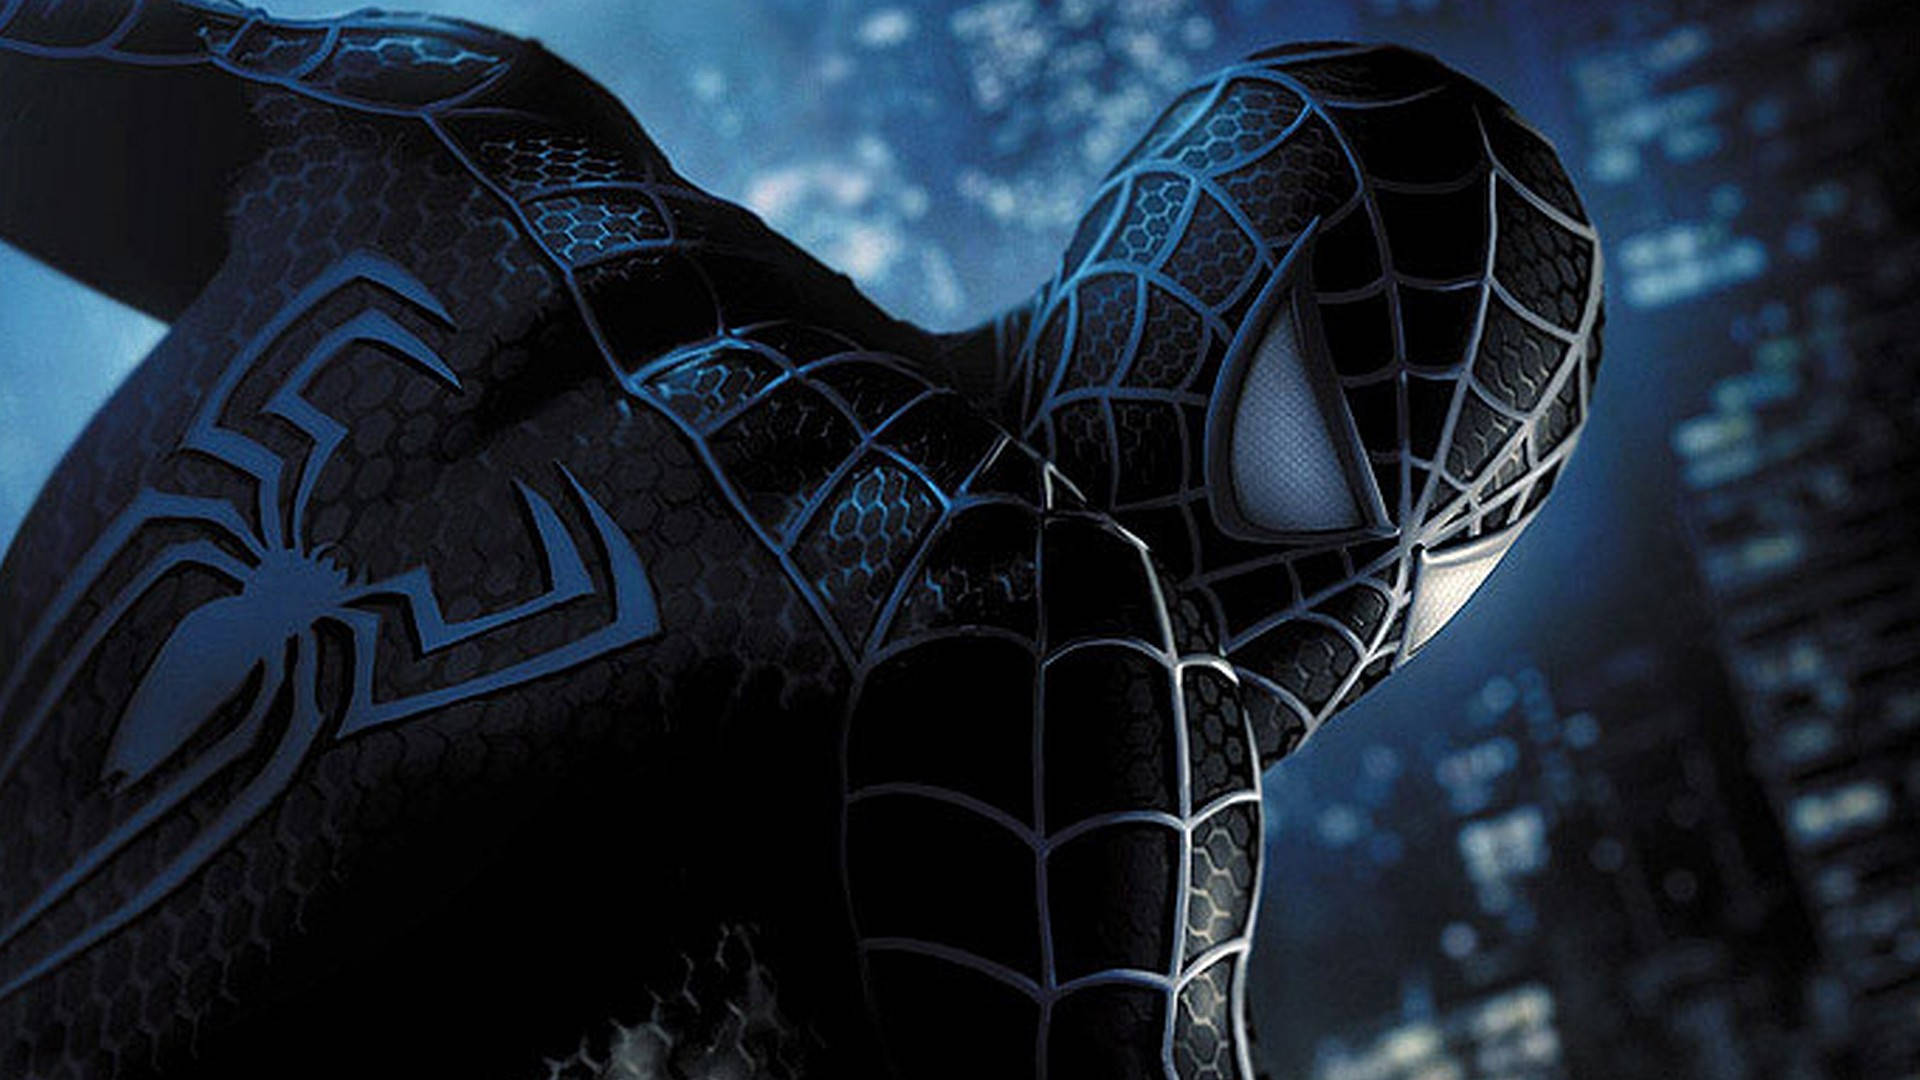 Sort Suit Spider Man Wallpaper